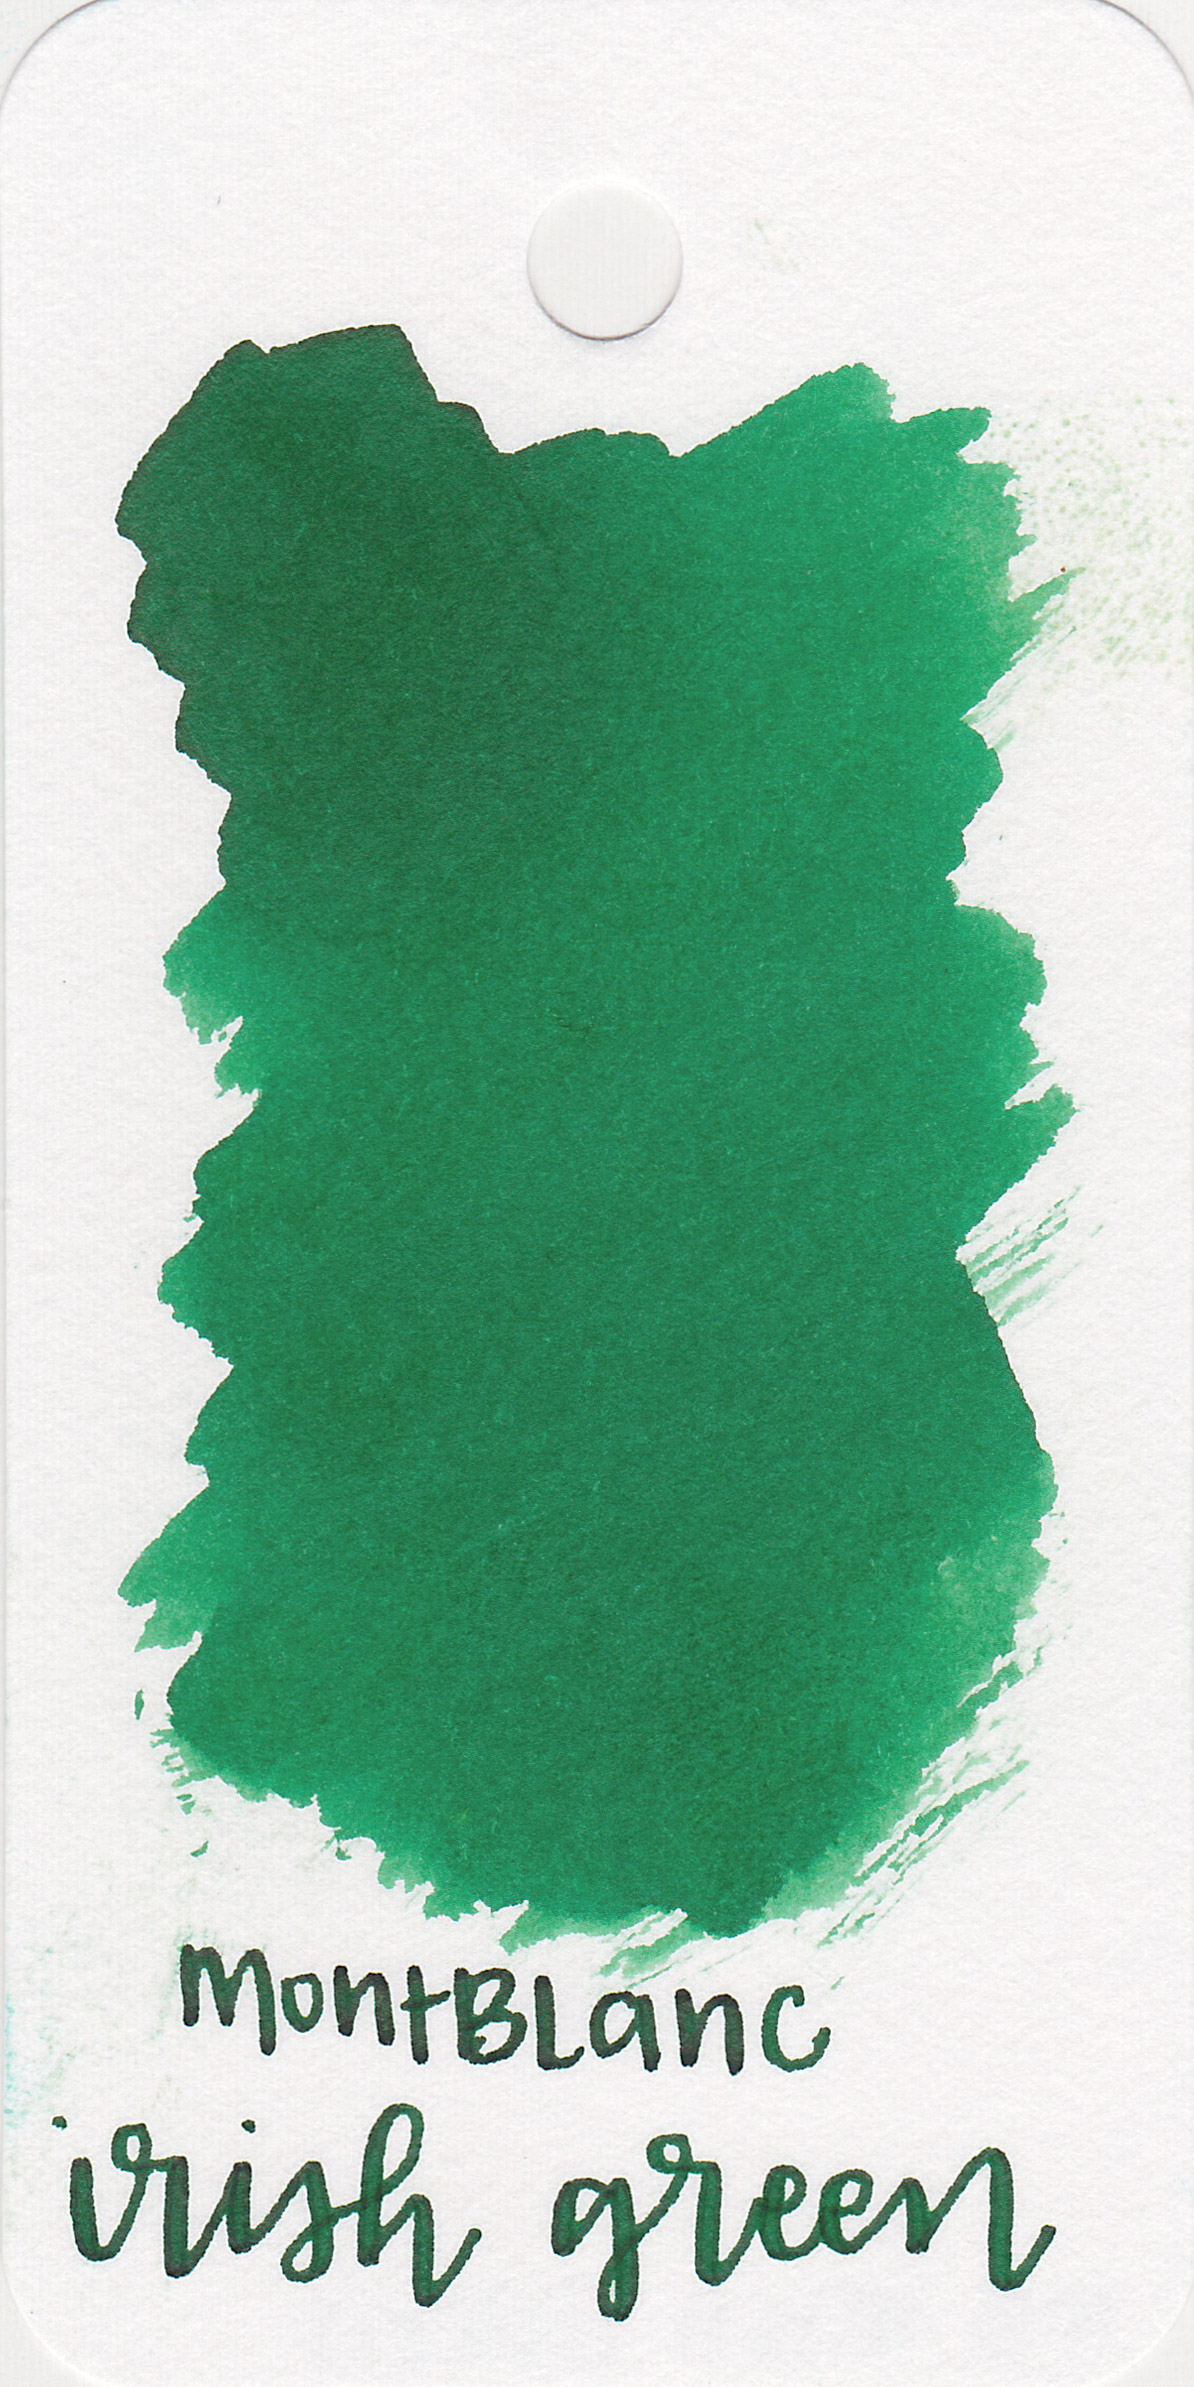 mb-irish-green-1.jpg